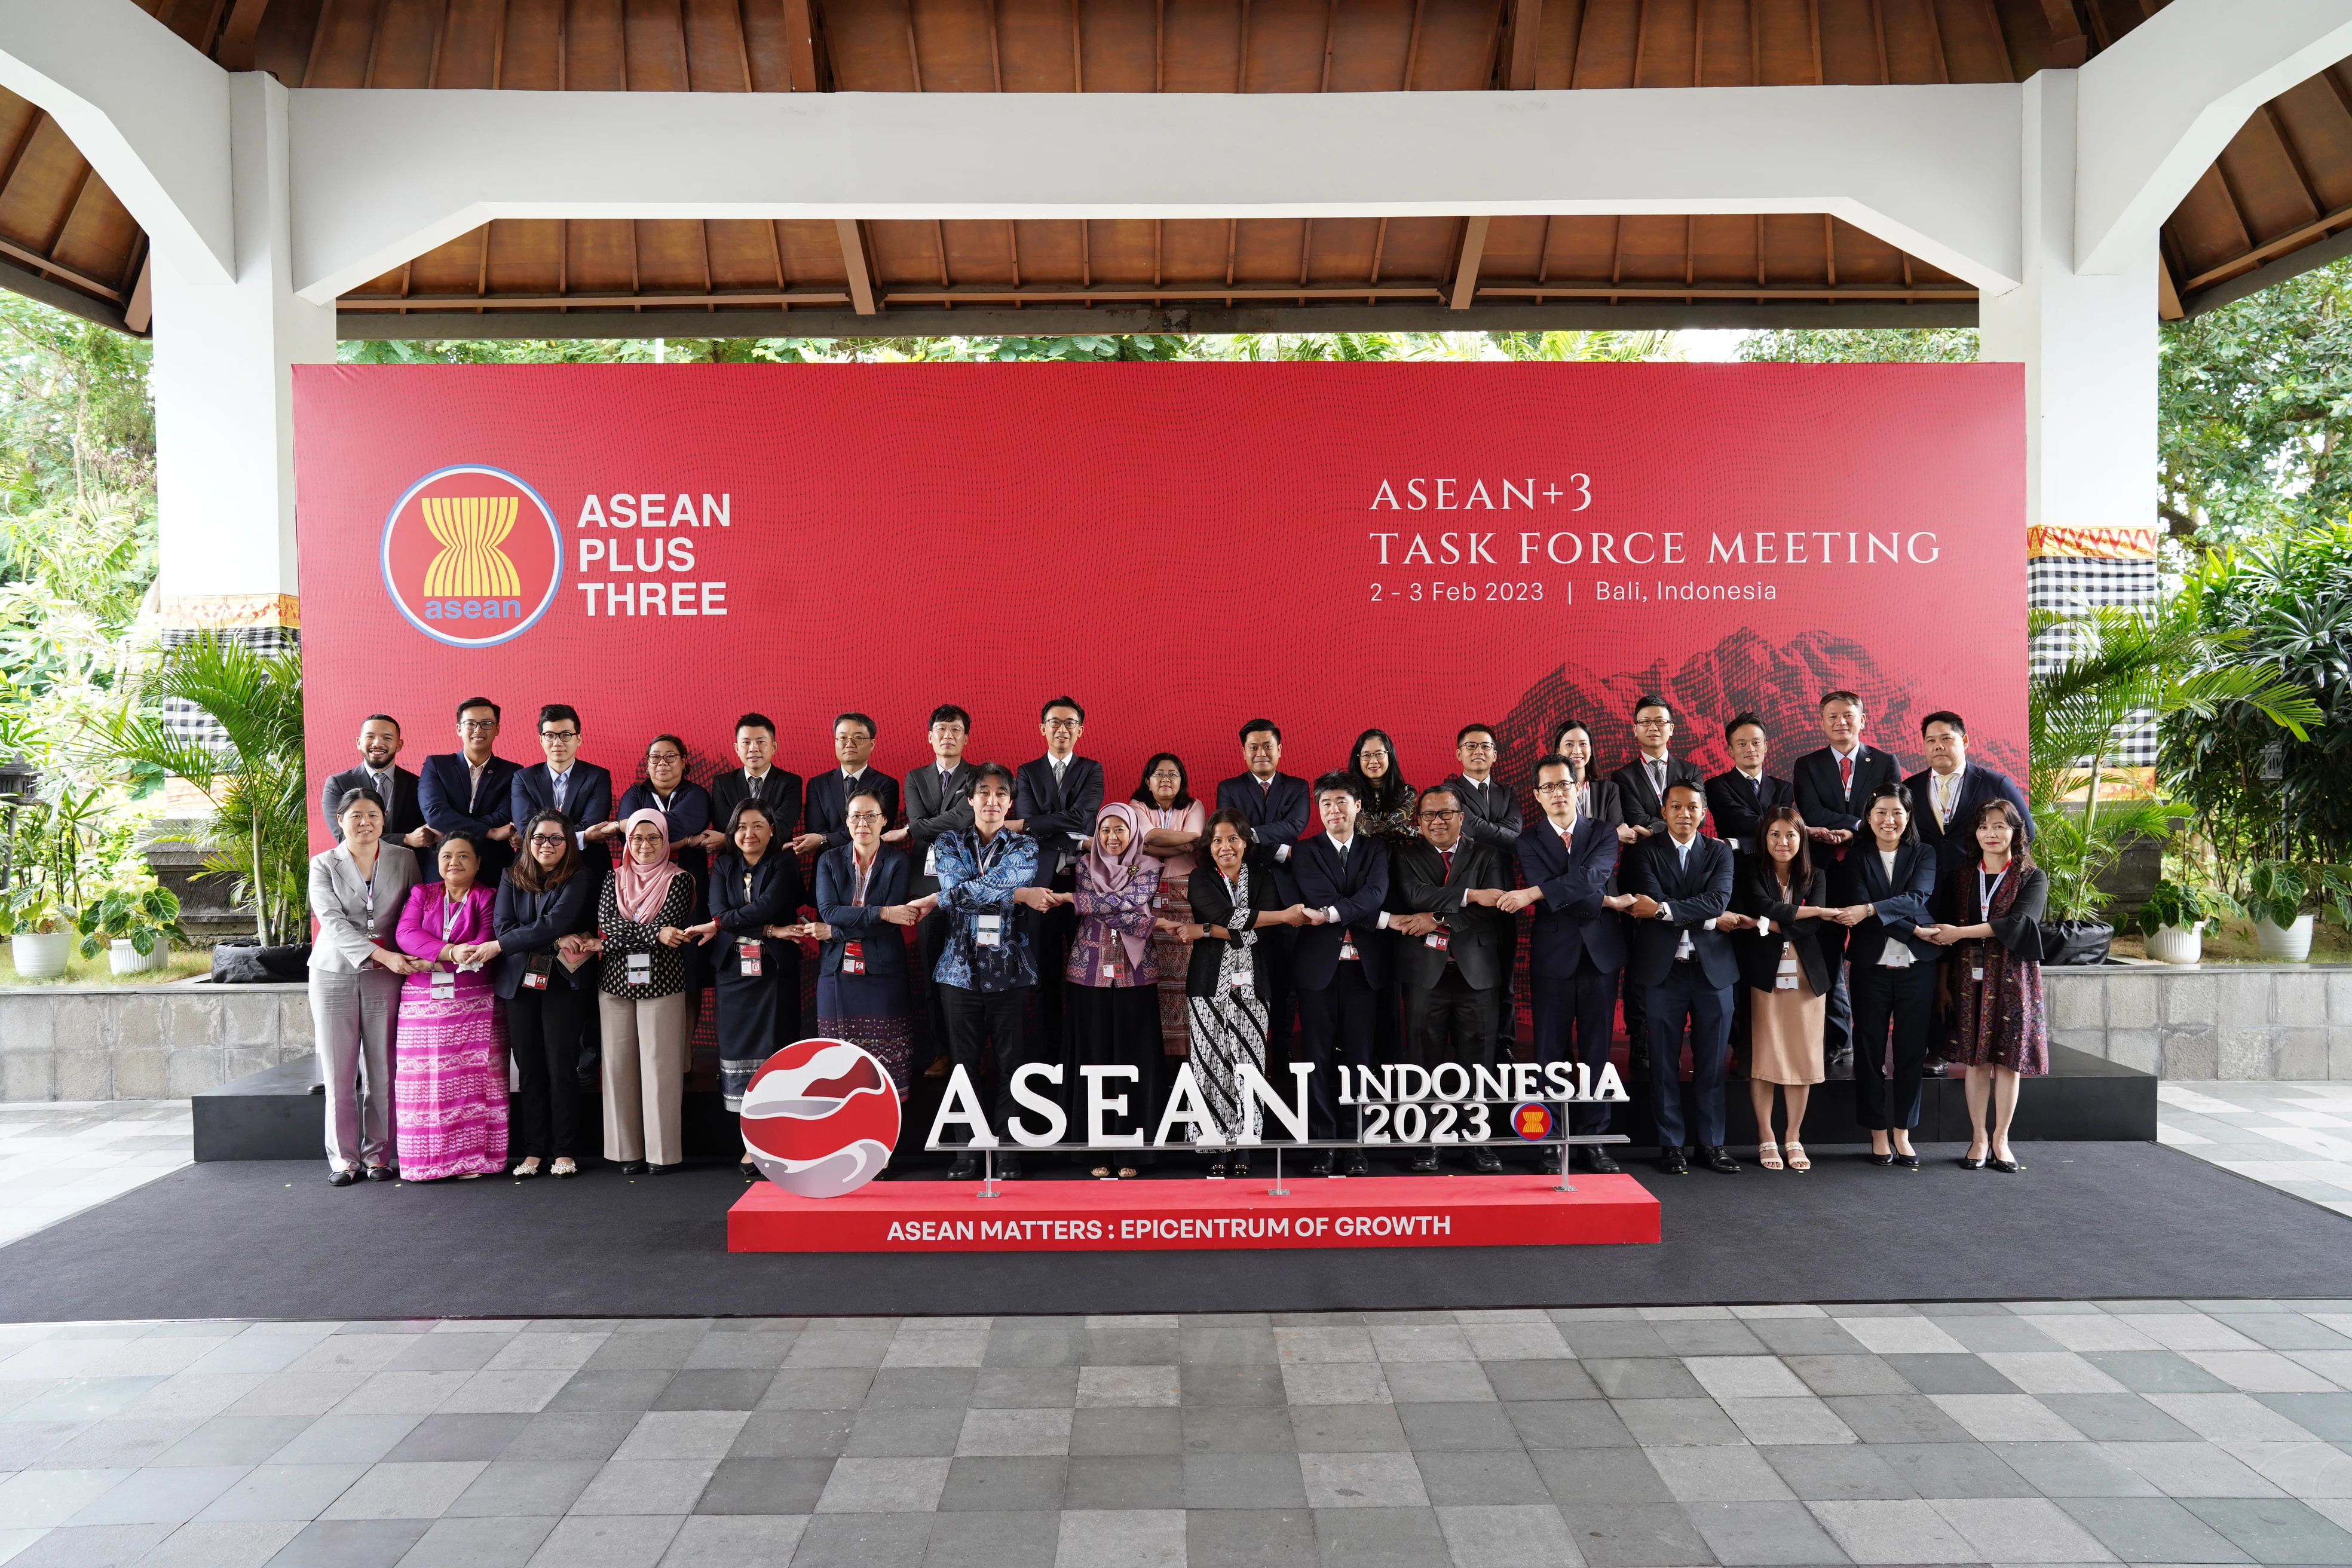 ASEAN+3 Task Force Meeting di bidang keuangan telah terlaksana pada 2-3 Februari 2023 di Nusa Dua, Bali. Pertemuan dihadiri 10 negara anggota ASEAN, Tiongkok, Jepang, Korea. Pertemuan dipimpin bersama oleh Indonesia (Bank Indonesia dan Kementerian Keuangan RI) dan Jepang (Kementerian Keuangan Jepang dan Bank Sentral Jepang). Sumber: BI